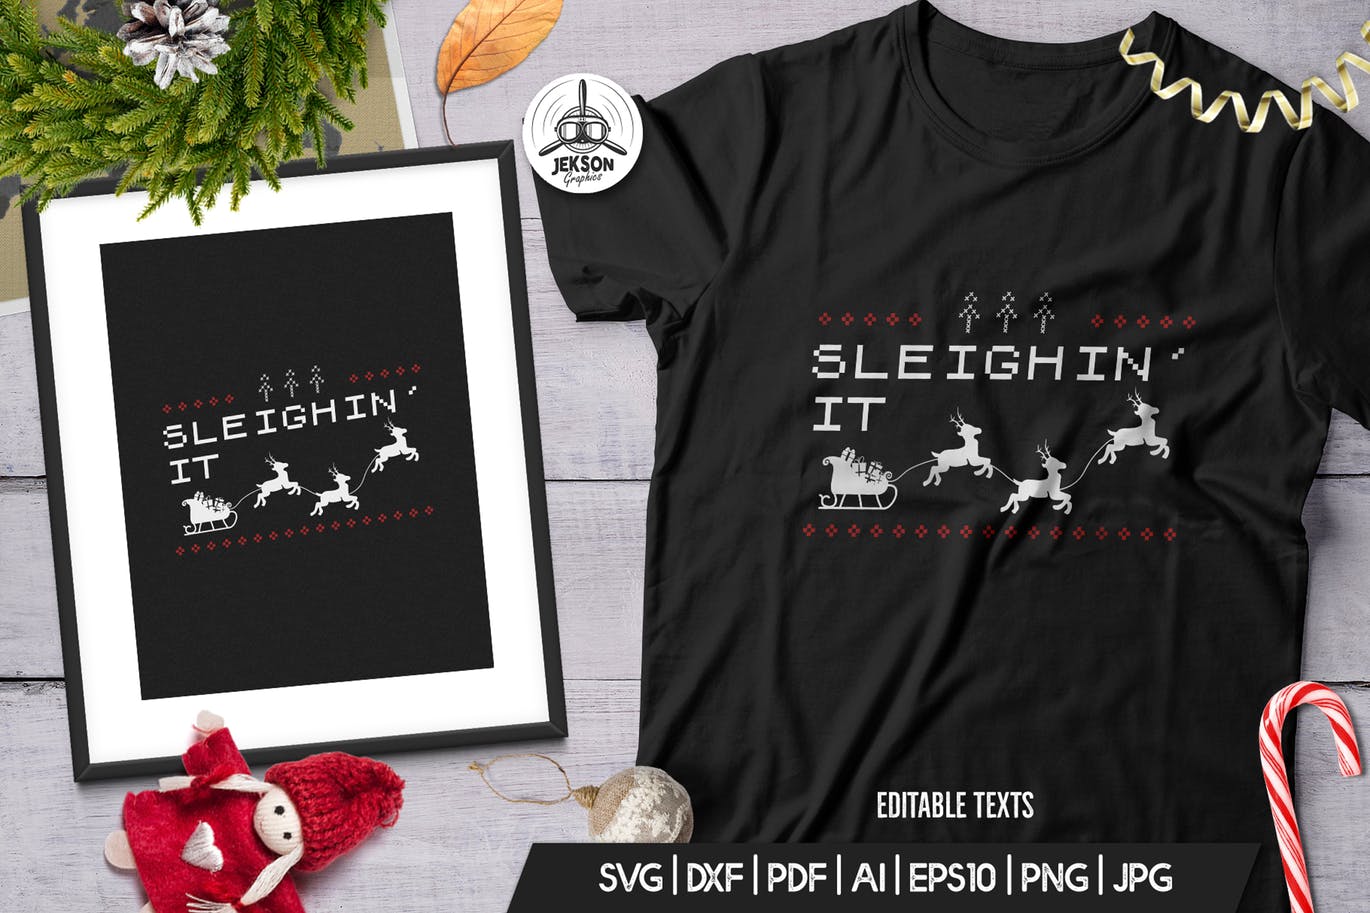 复古风格圣诞节主题T恤圣诞老人&麋鹿印花图案设计素材 Vintage Christmas Print Template, TShirt Design插图